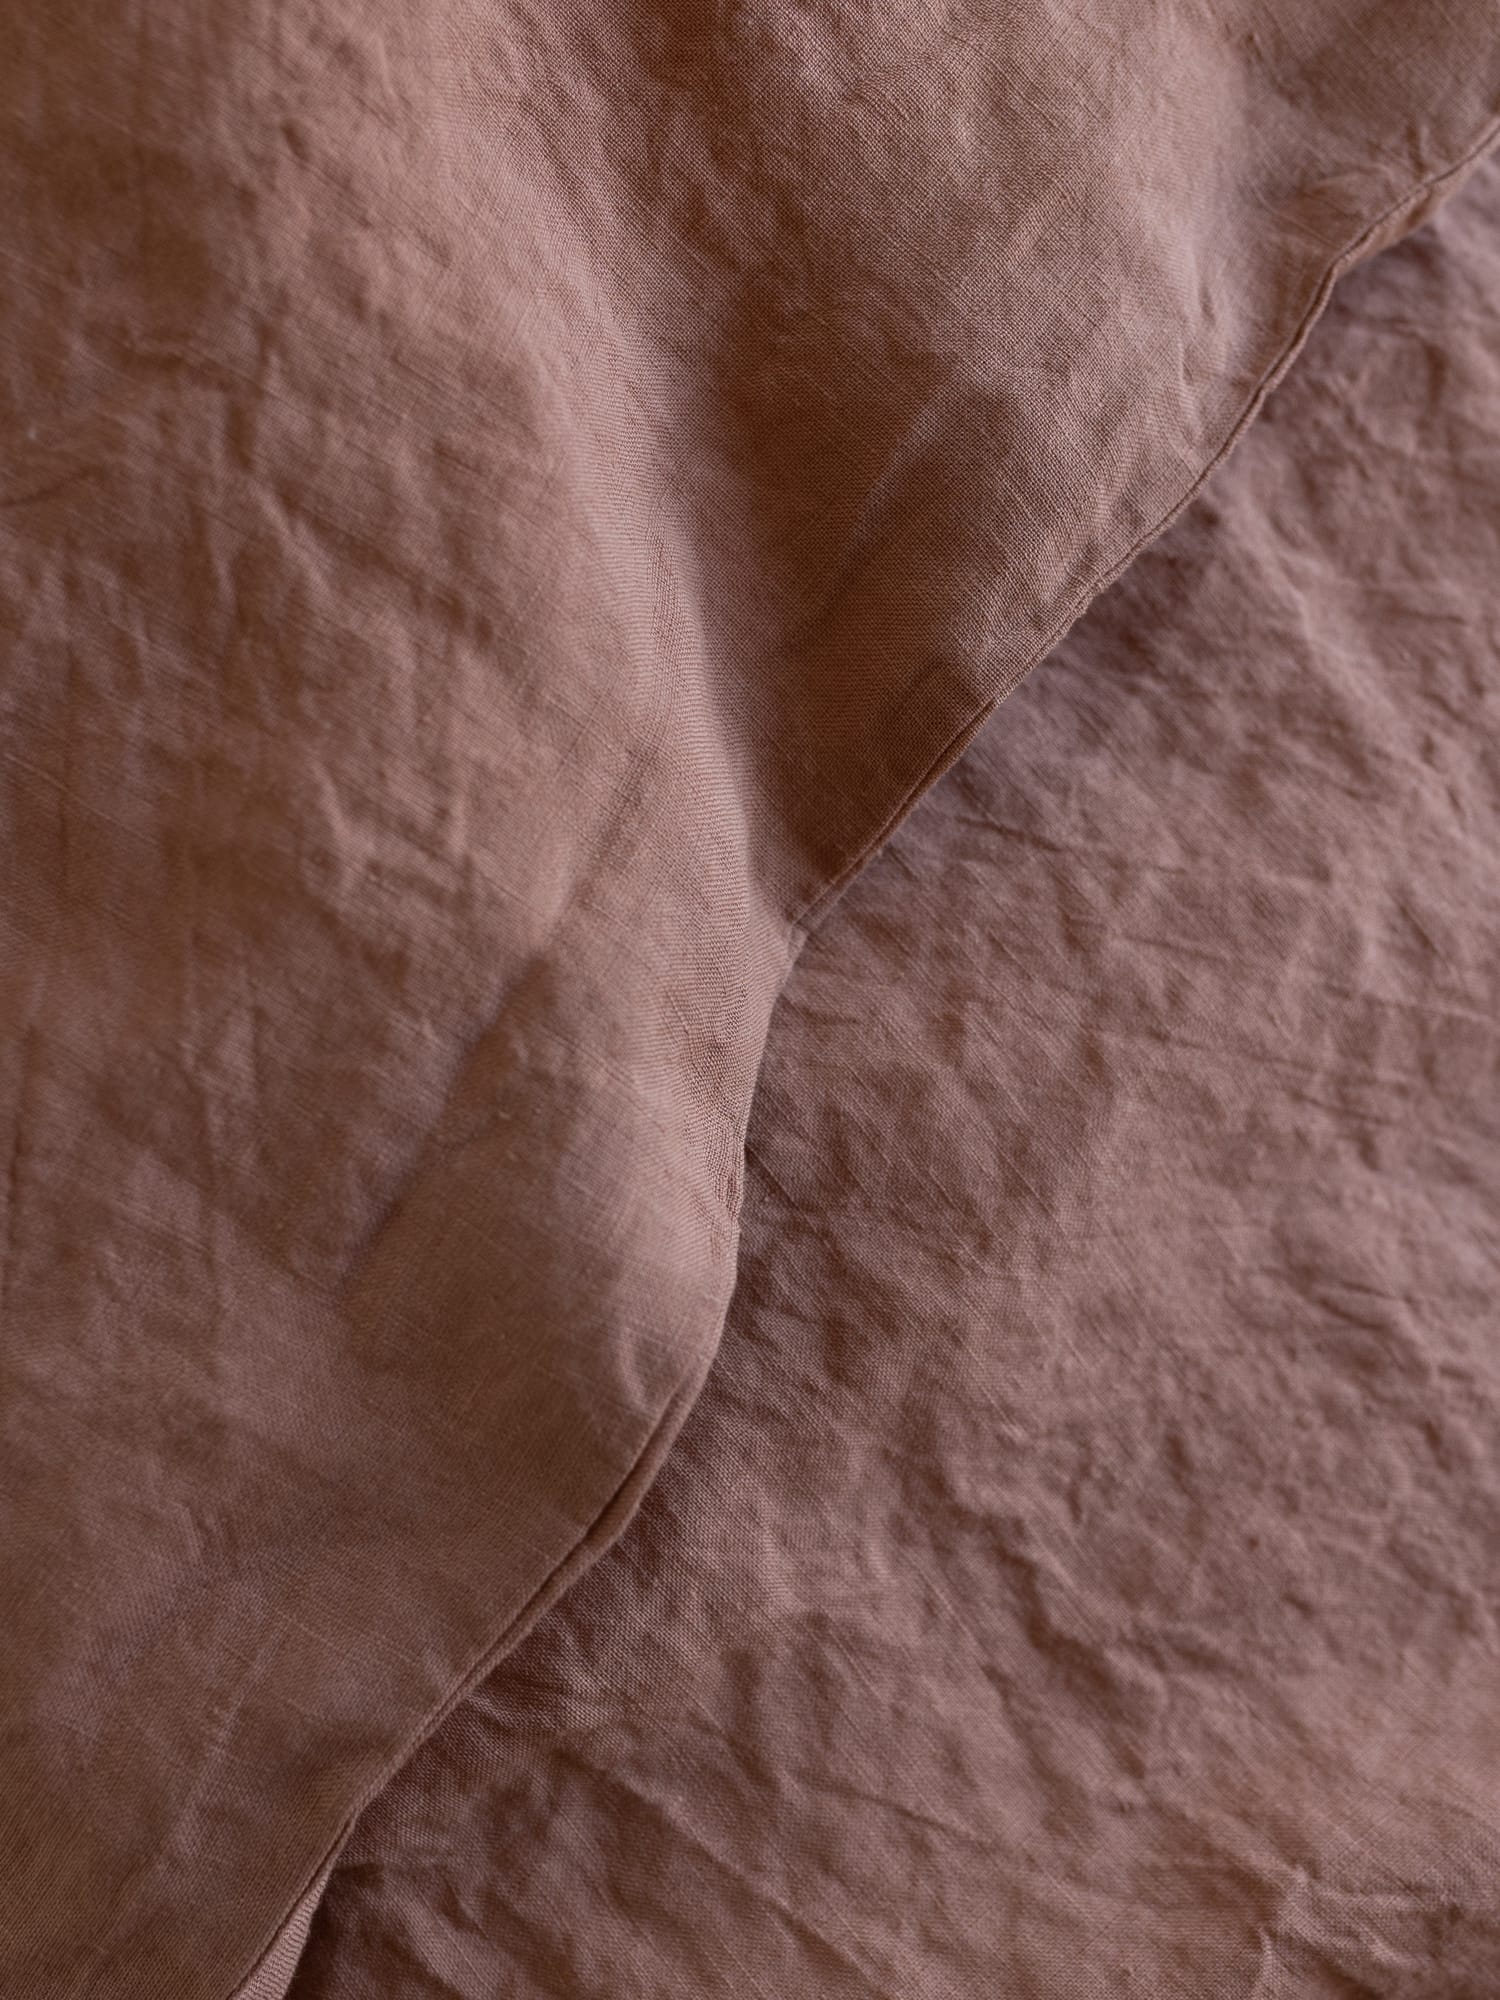 100% linnen -Dekbedovertrek set - 2 kussenslopen - Tweepersoons (200 x 200 cm) - Warm roze - Linnen Label